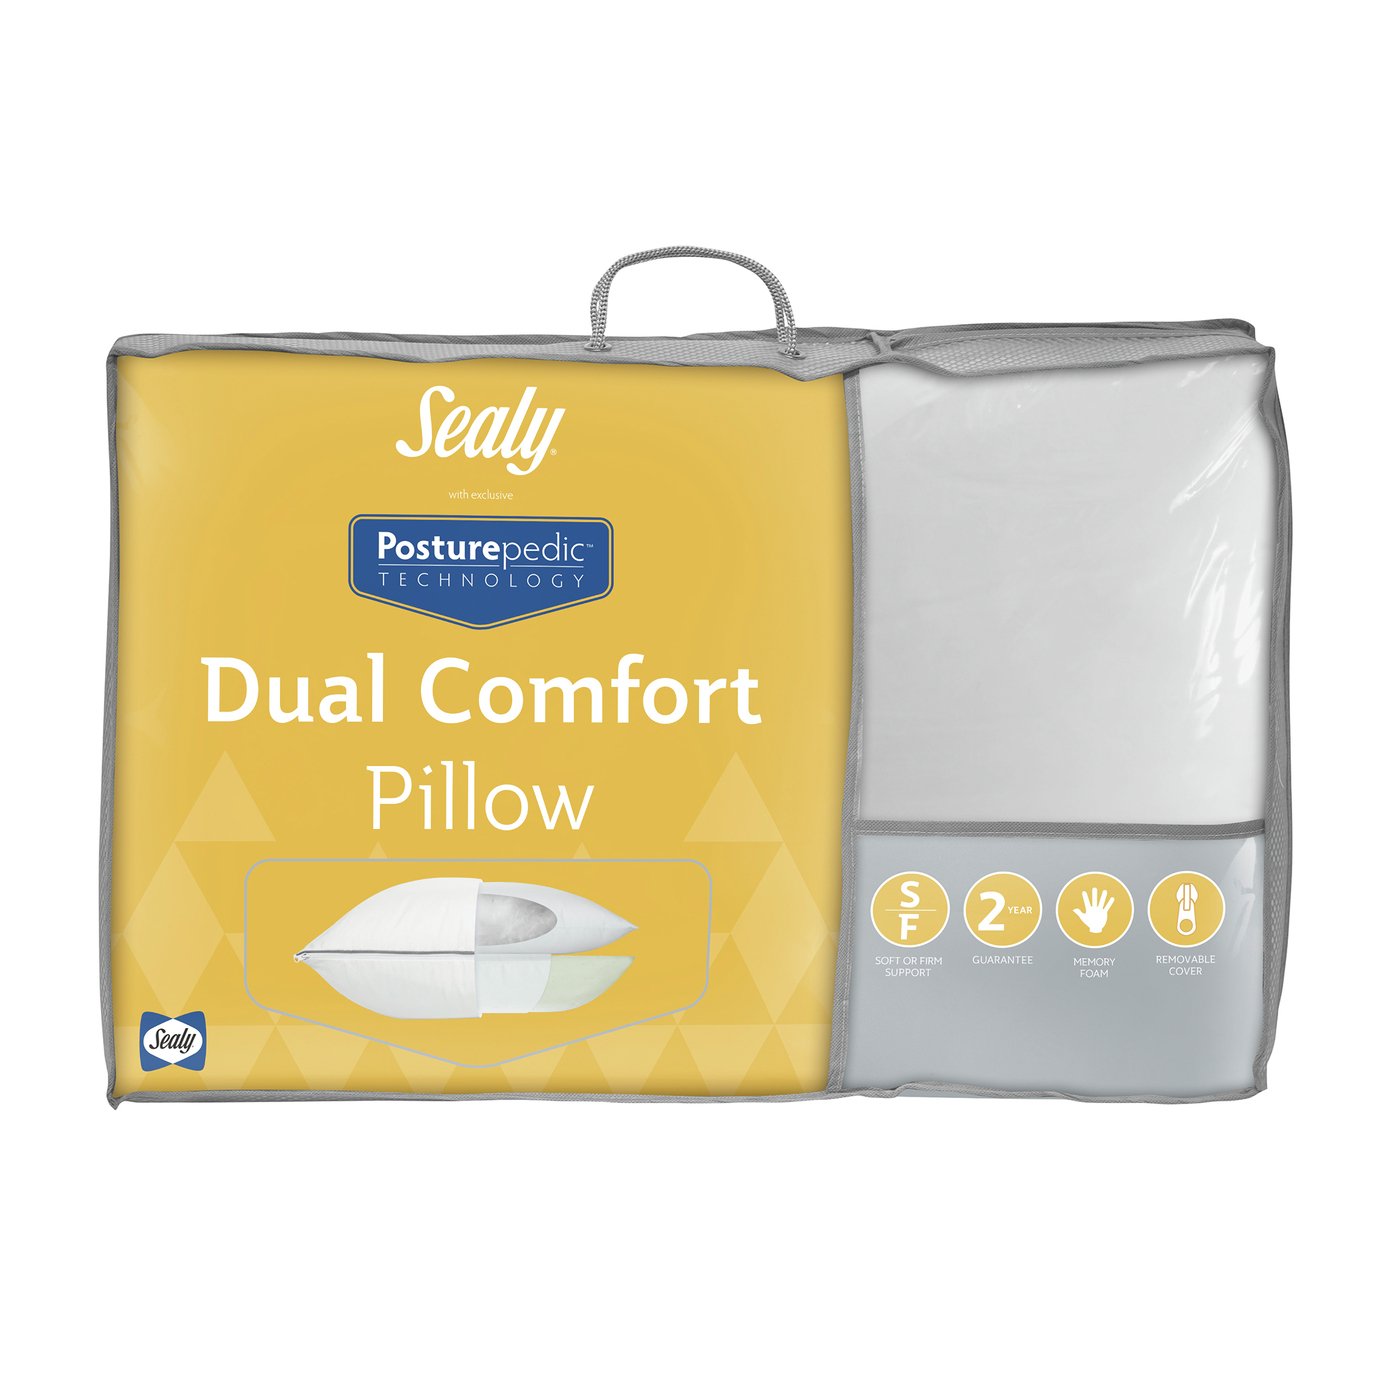 Sealy Posturepedic Dual Comfort Pillow